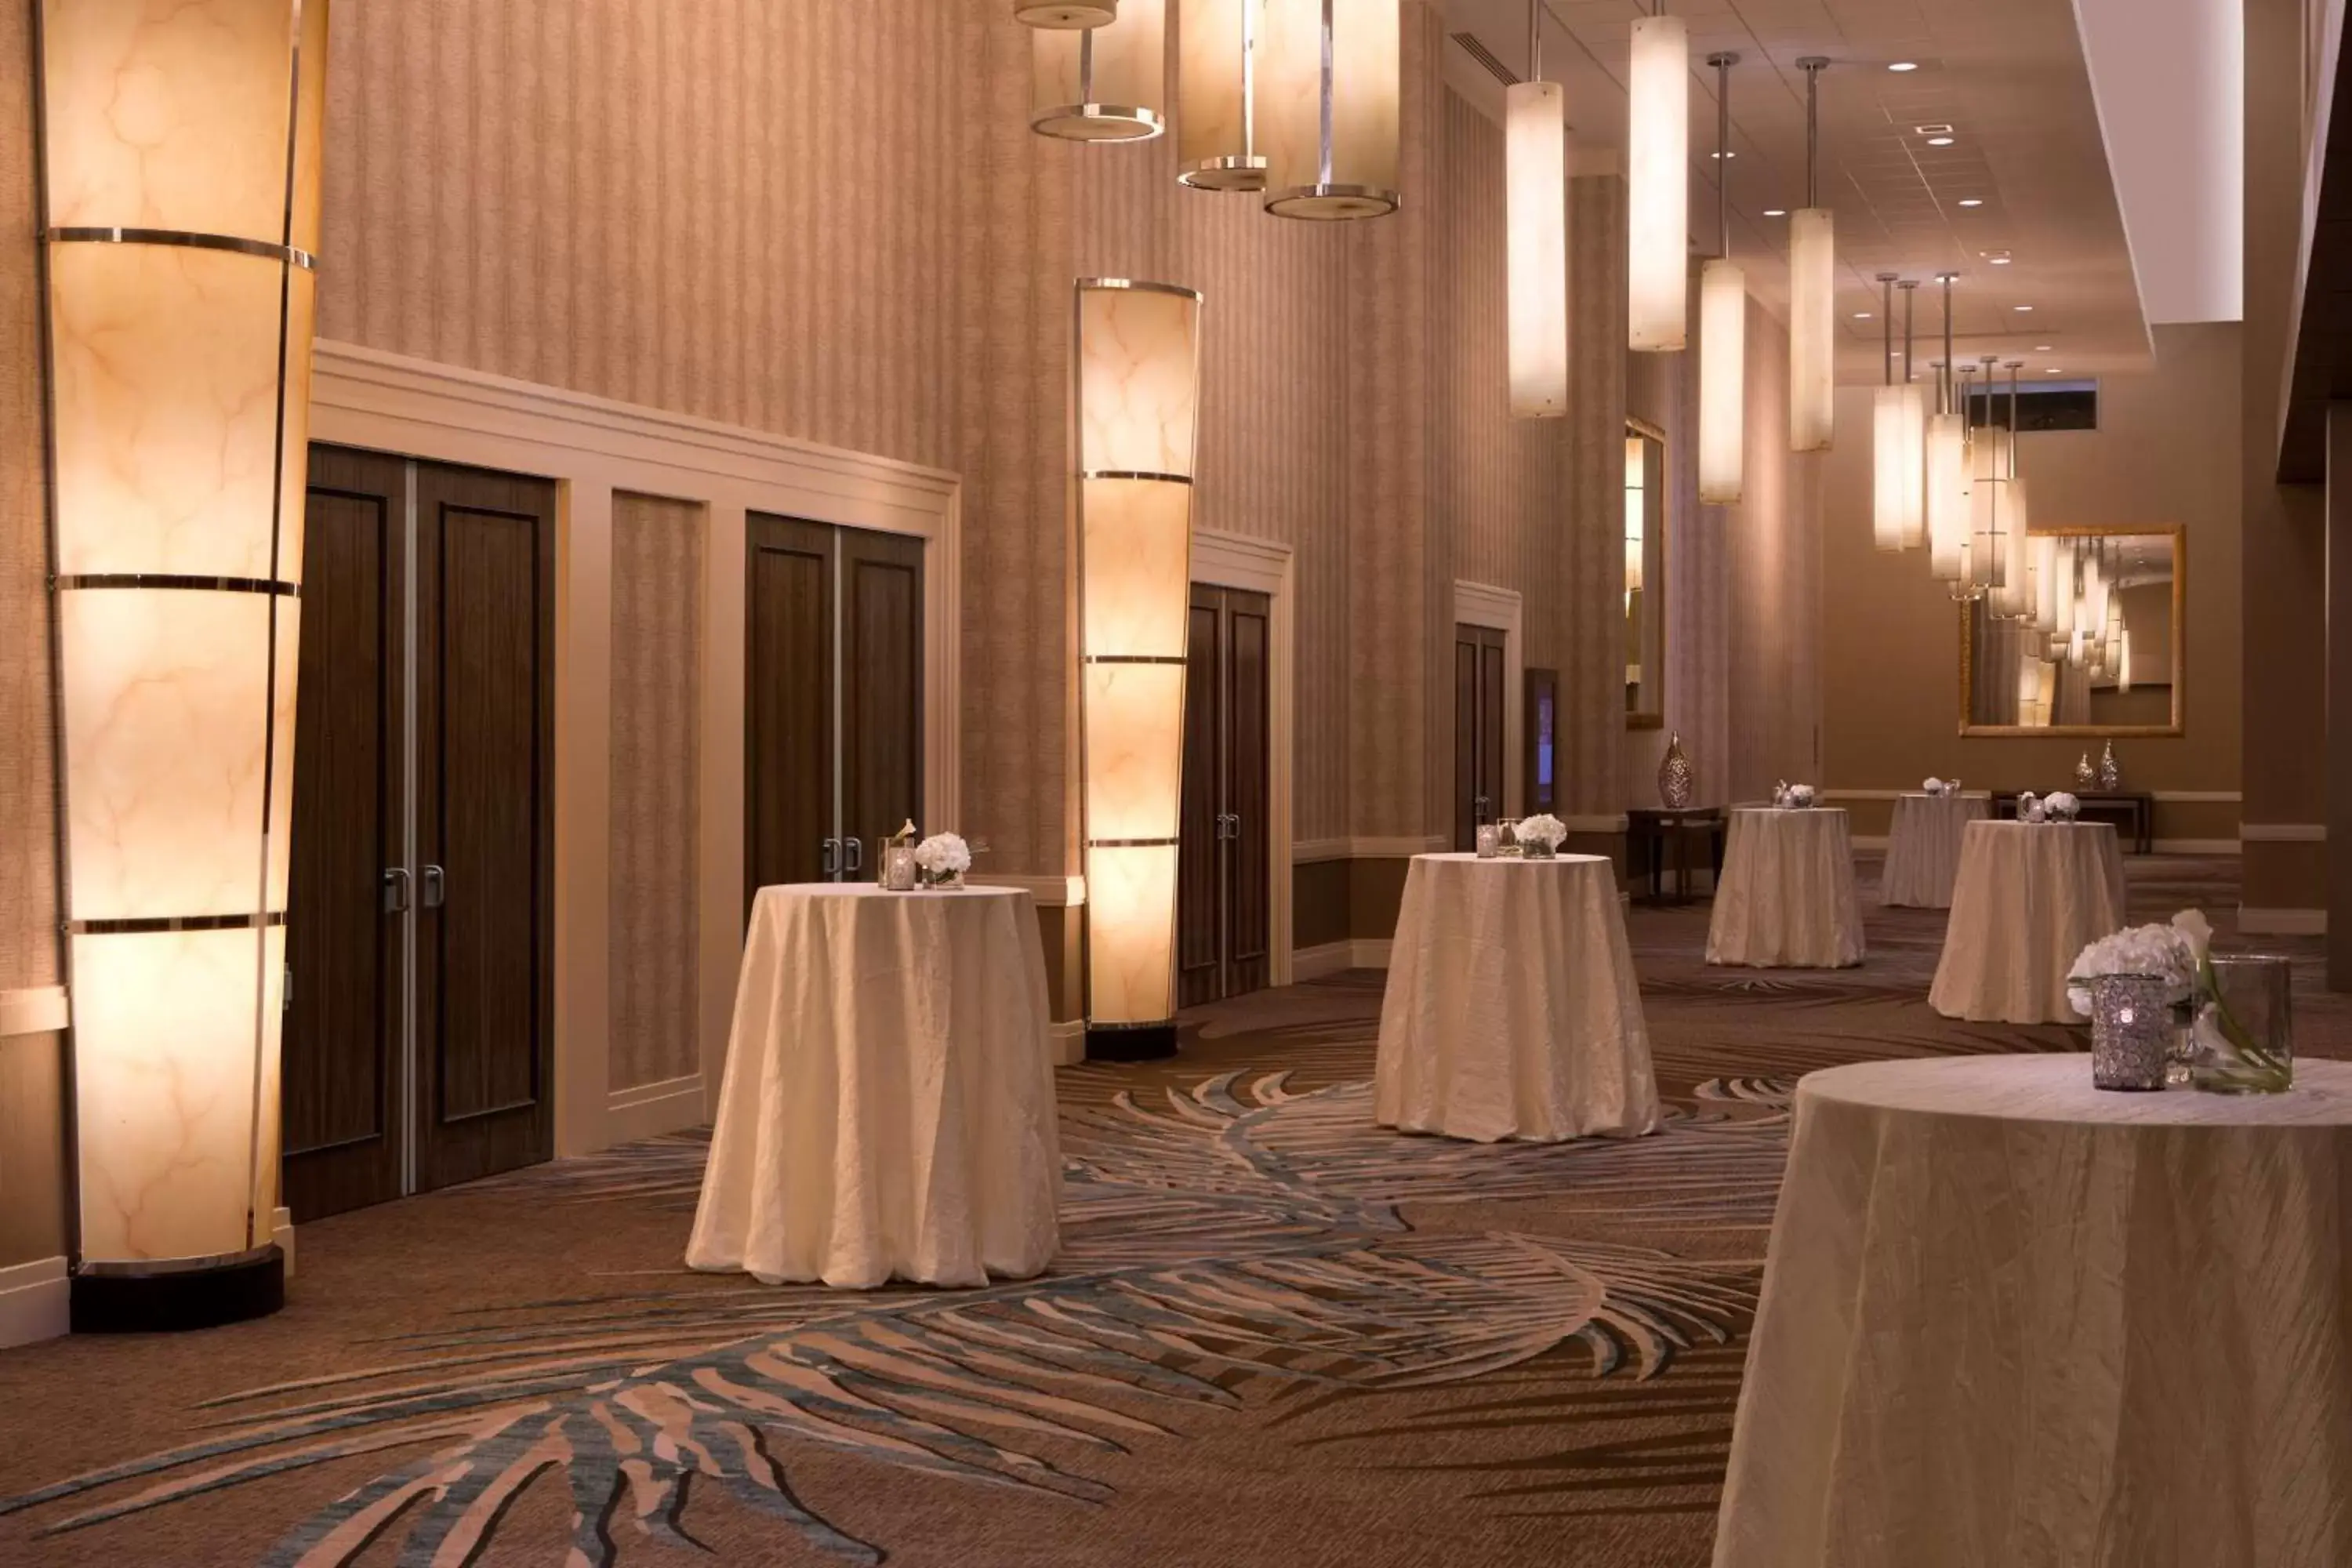 Meeting/conference room, Banquet Facilities in Hilton Orlando Lake Buena Vista - Disney Springs™ Area